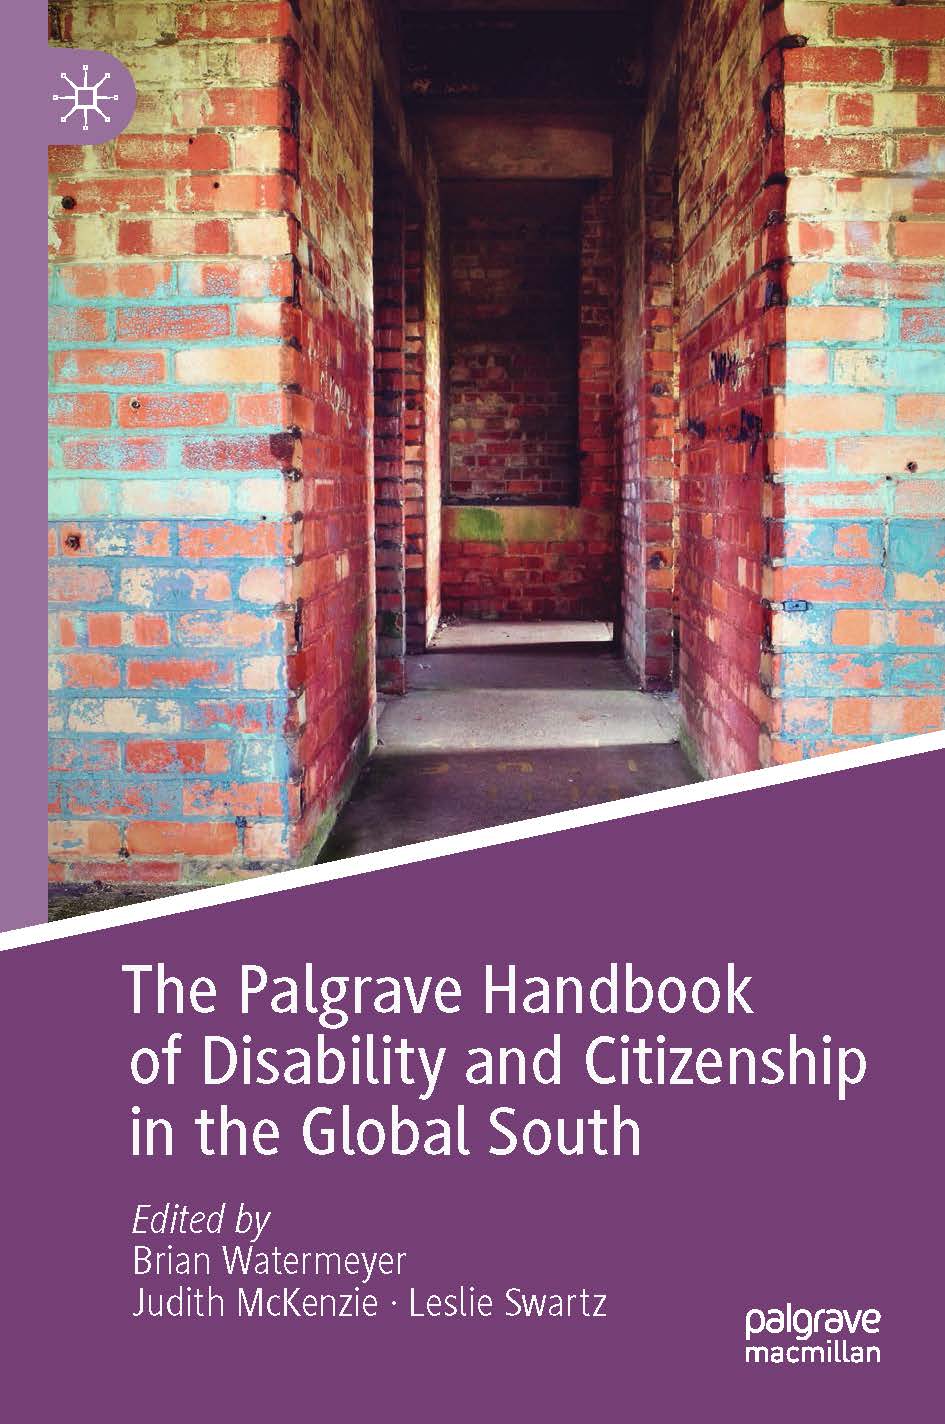 页面提取自－2019_Book_The Palgrave Handbook of Disability and Citizenship in the Global South.jpg